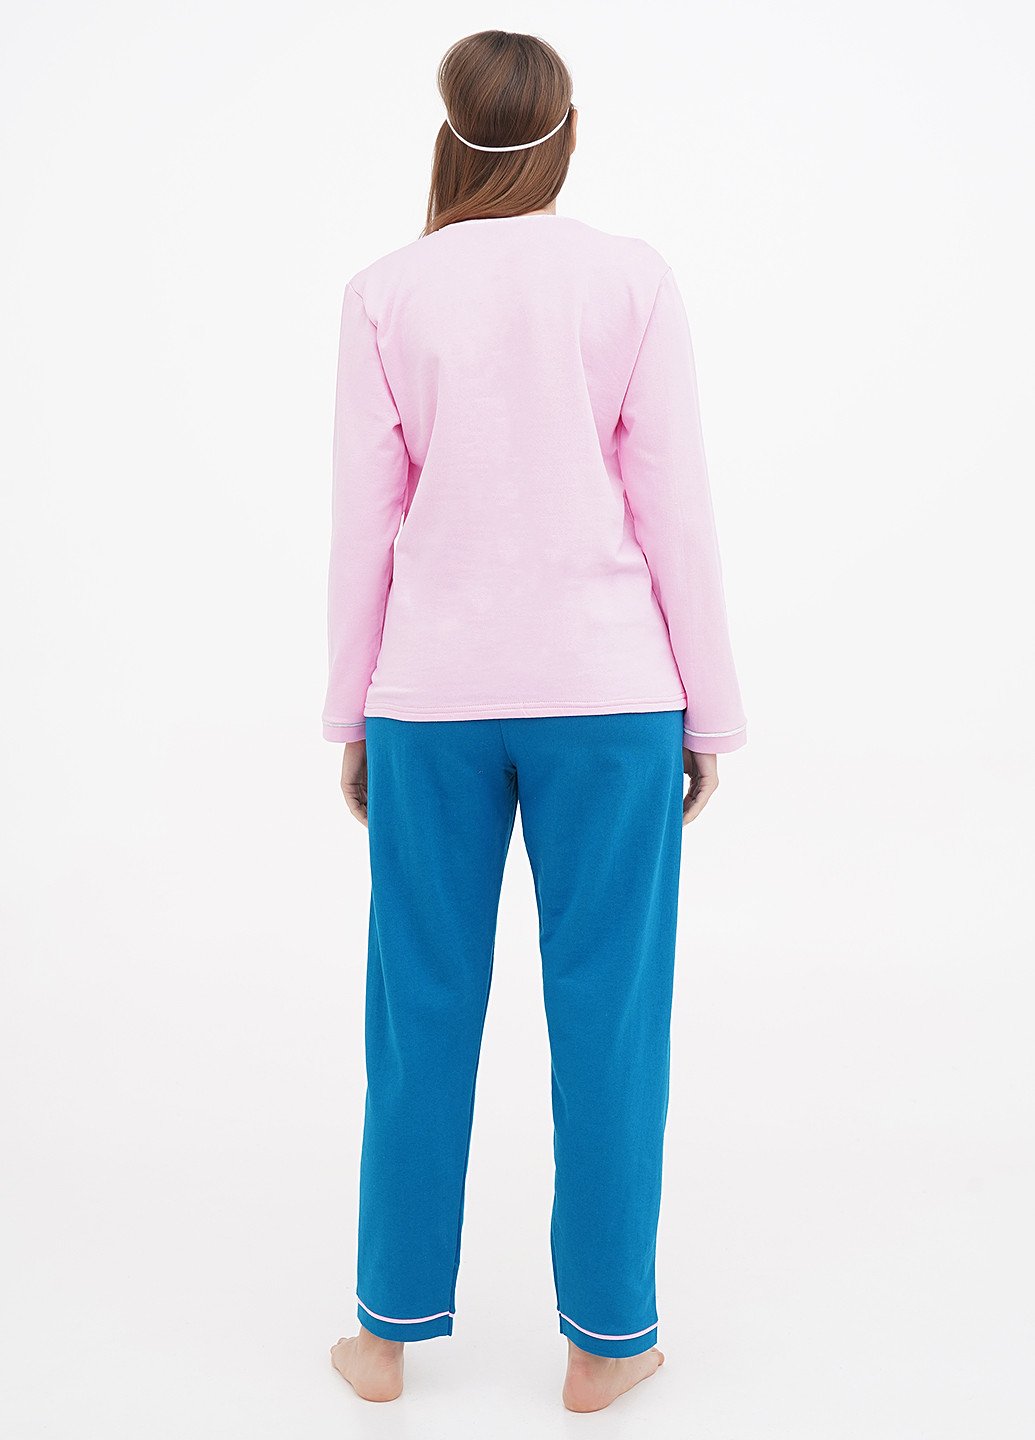 Комбинированная всесезон пижама (лонгслив брюки, маска для сна) лонгслив + брюки Трикомир